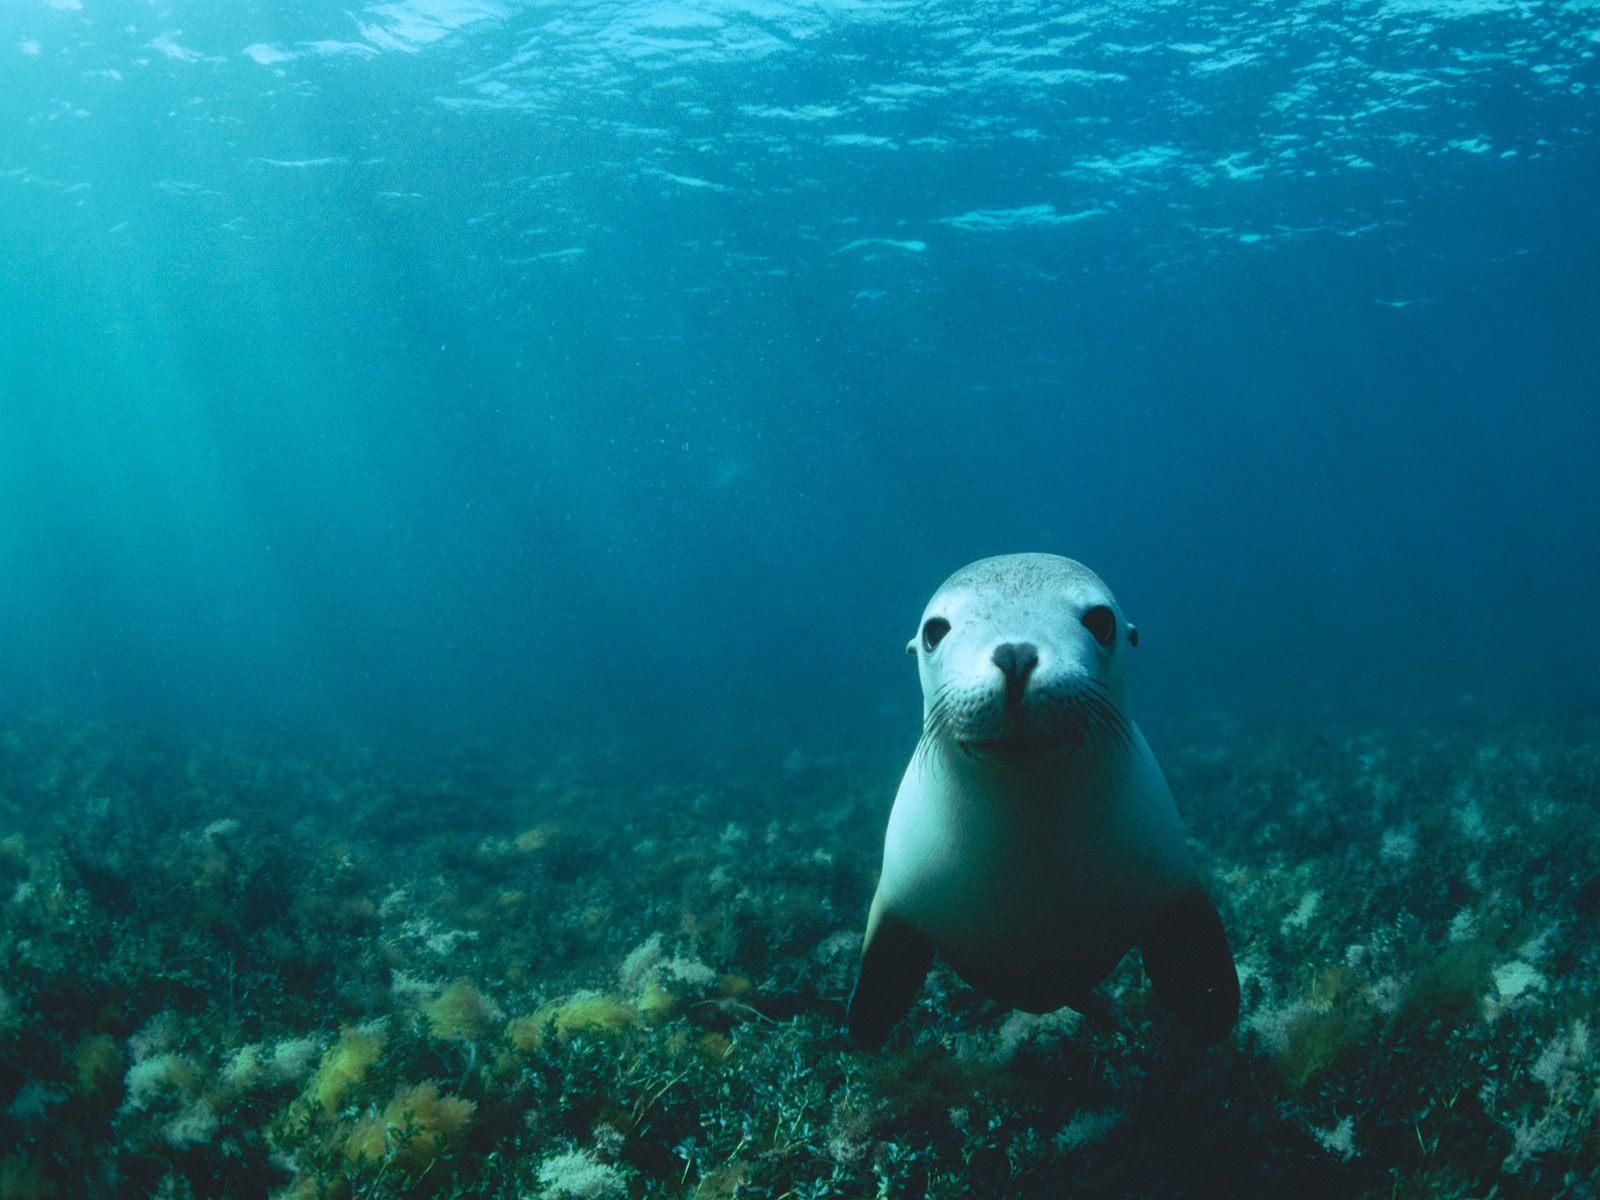 underwater. Underwater wallpaper, Underwater background, Sea lion